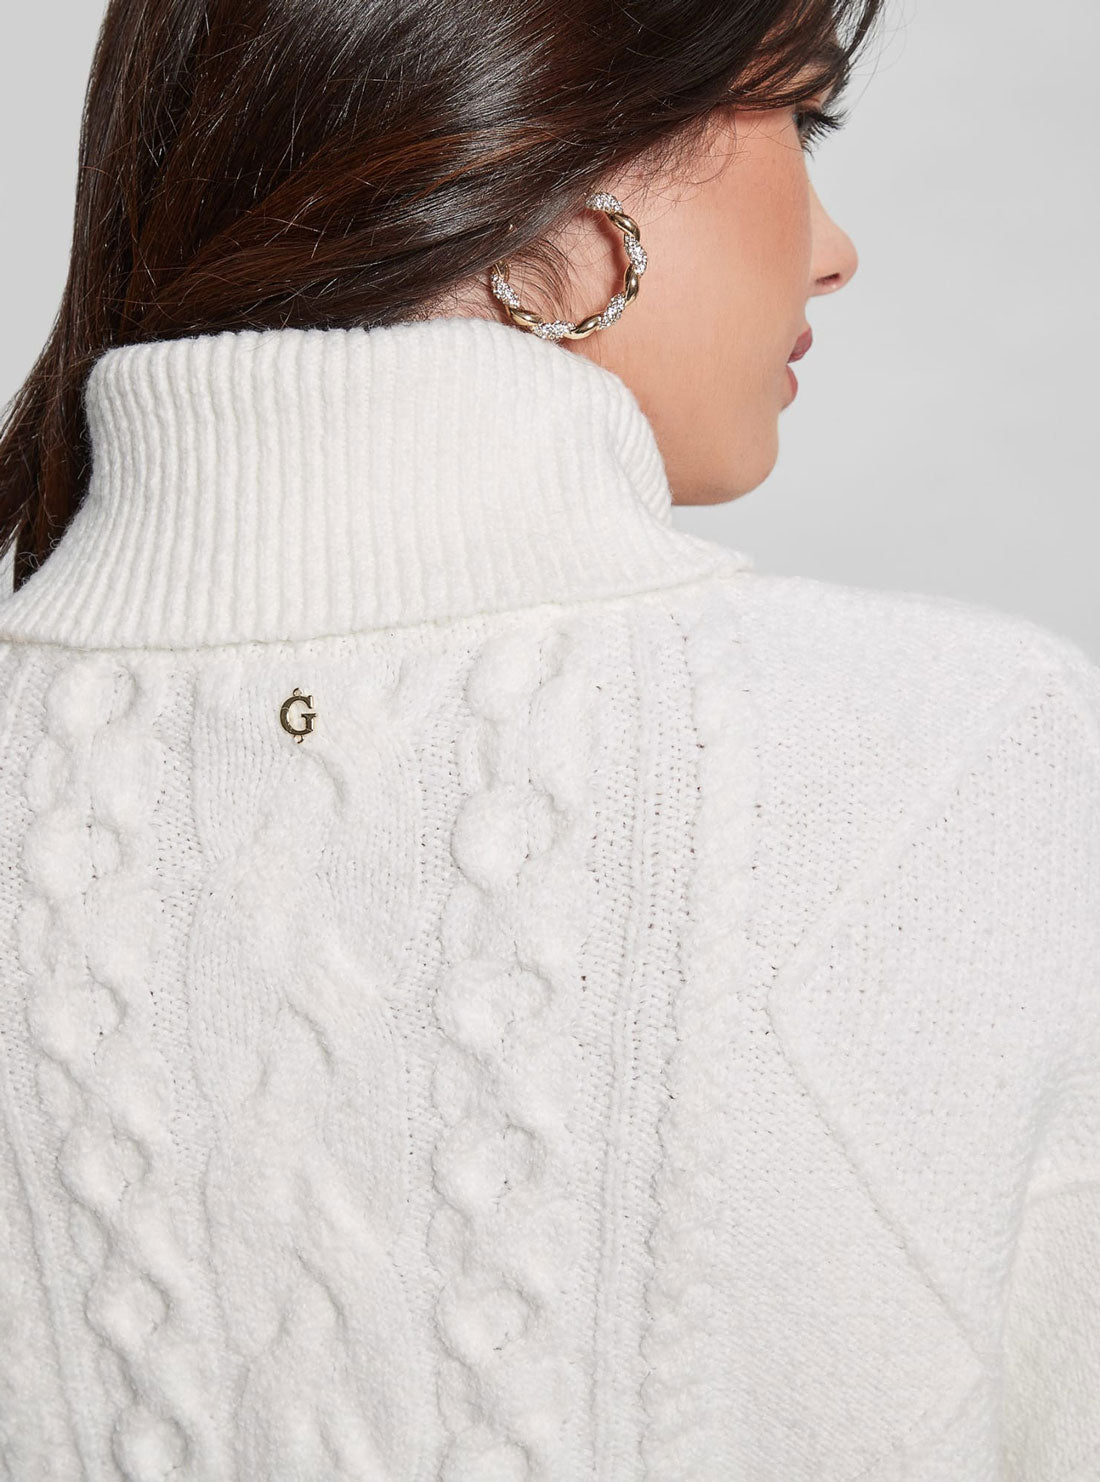 White Jen Knit Top | GUESS Women's Apparel | back detail view